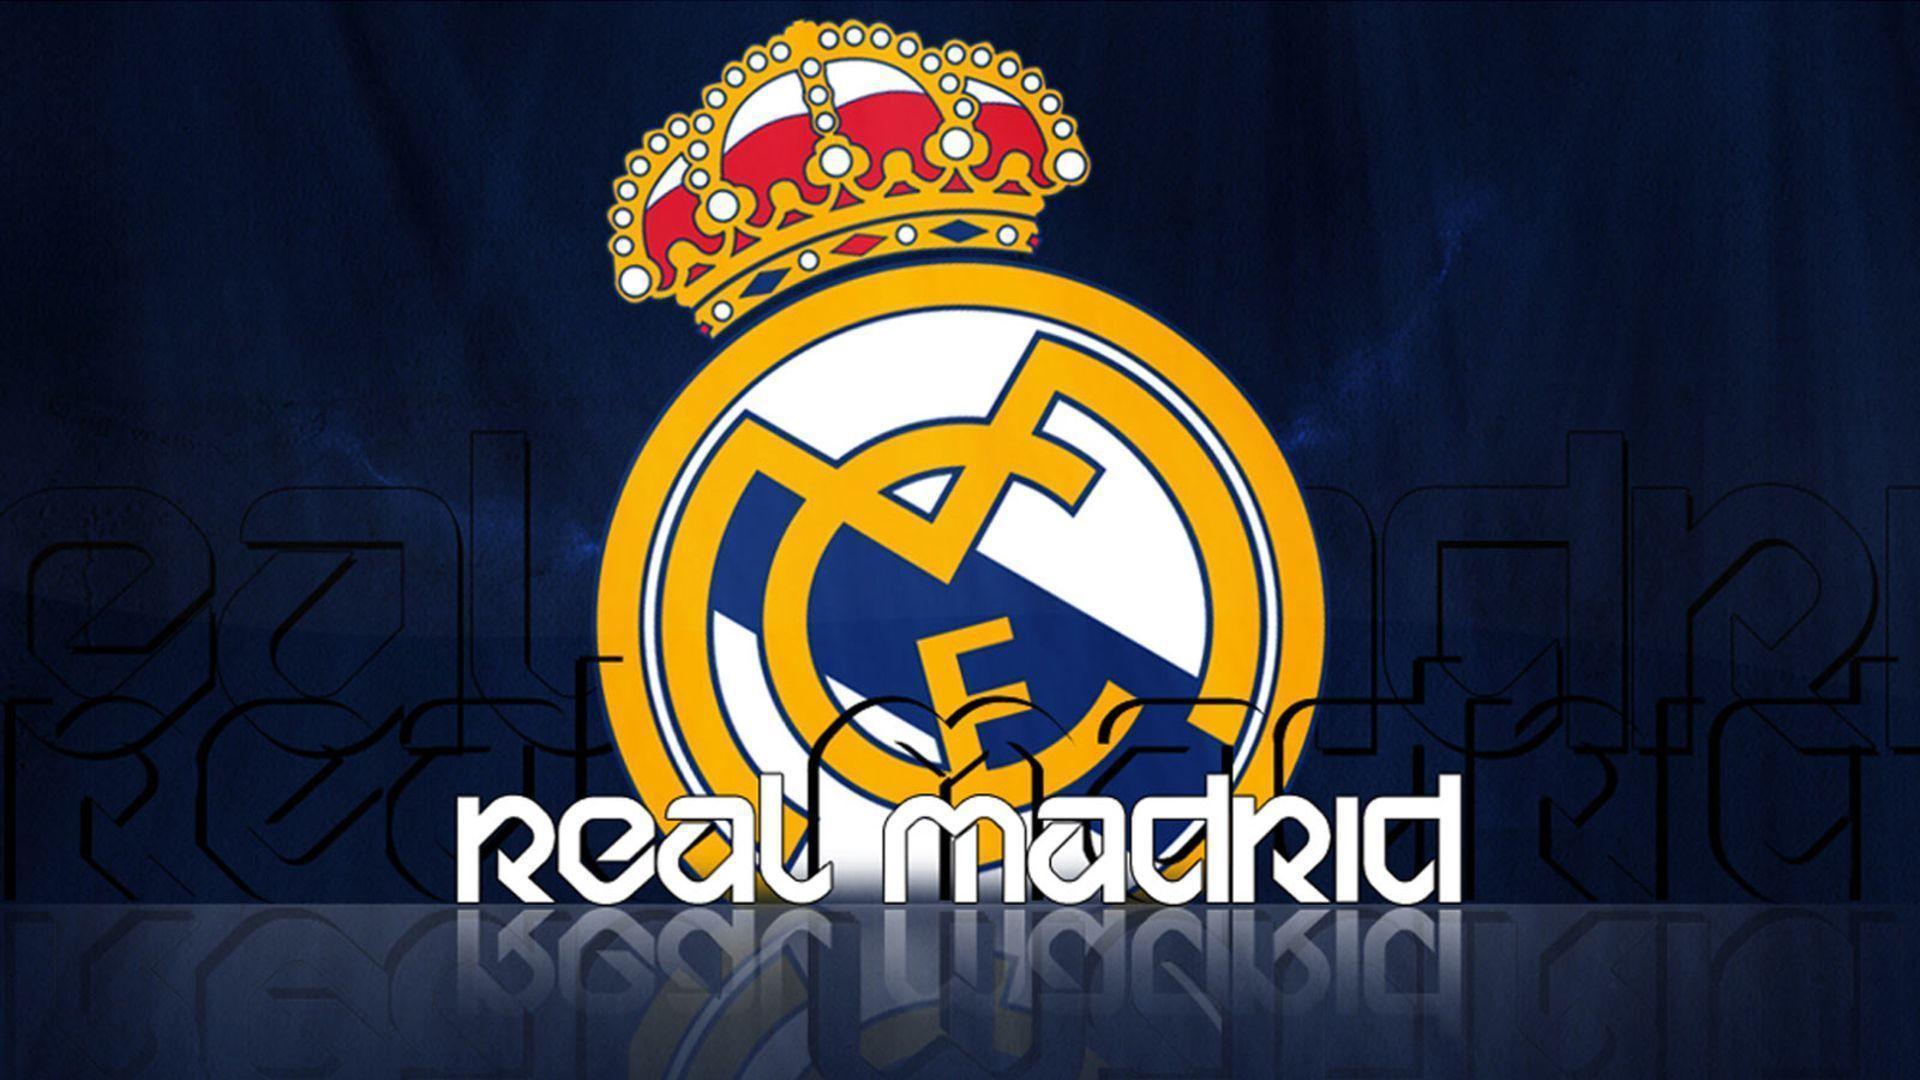 Real Madrid Logo Teams wallpaper HD 2016 in Soccer